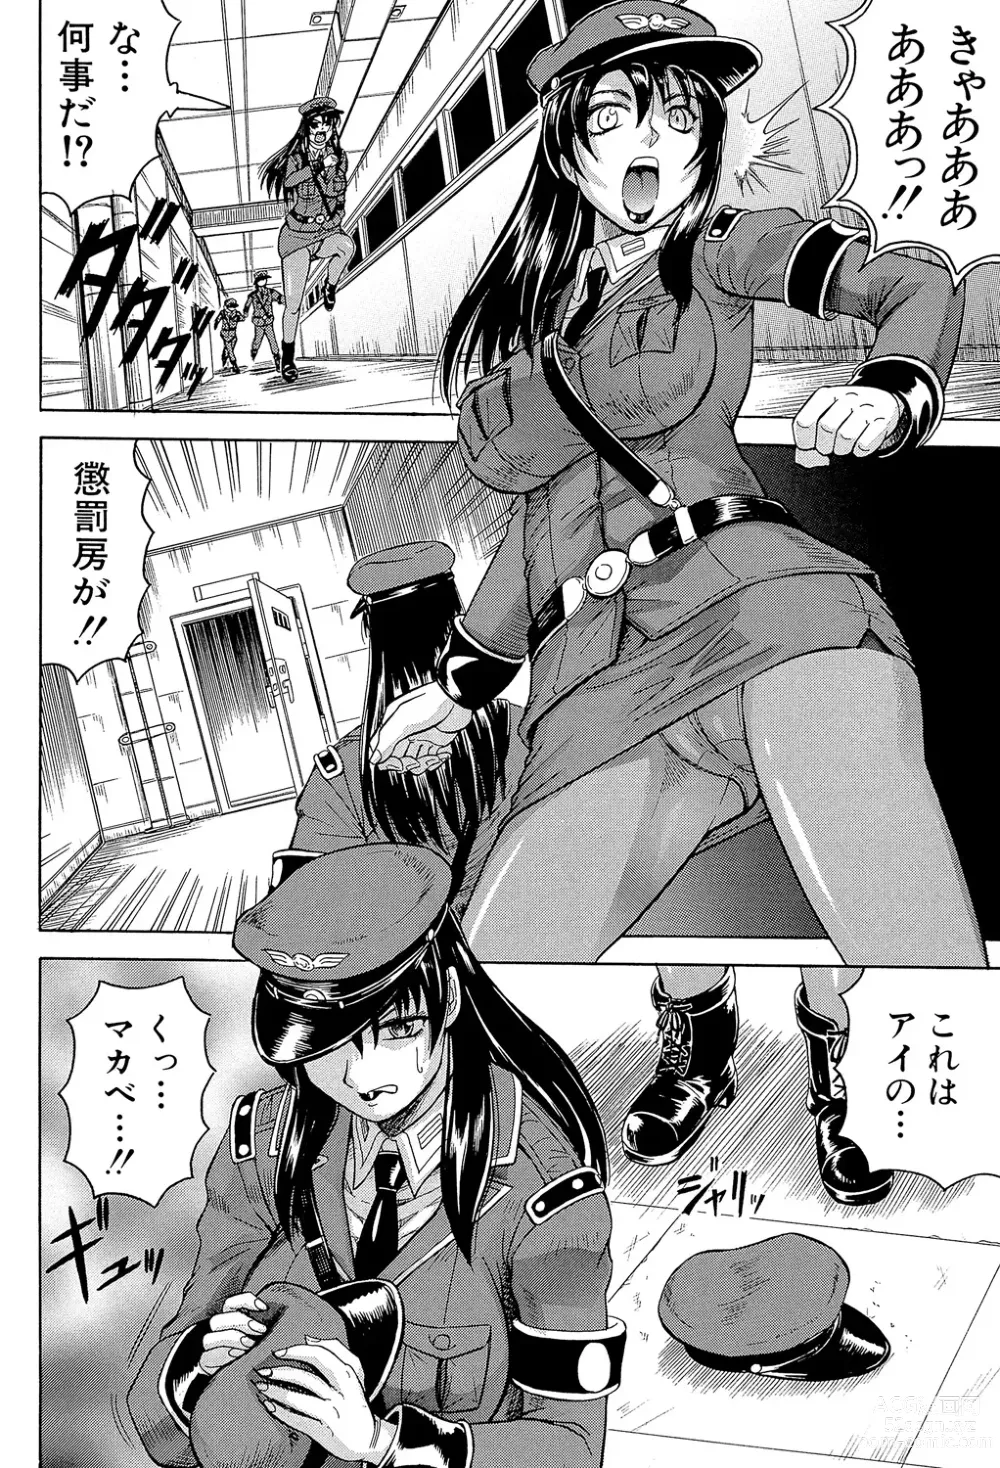 Page 14 of manga Kangokujima